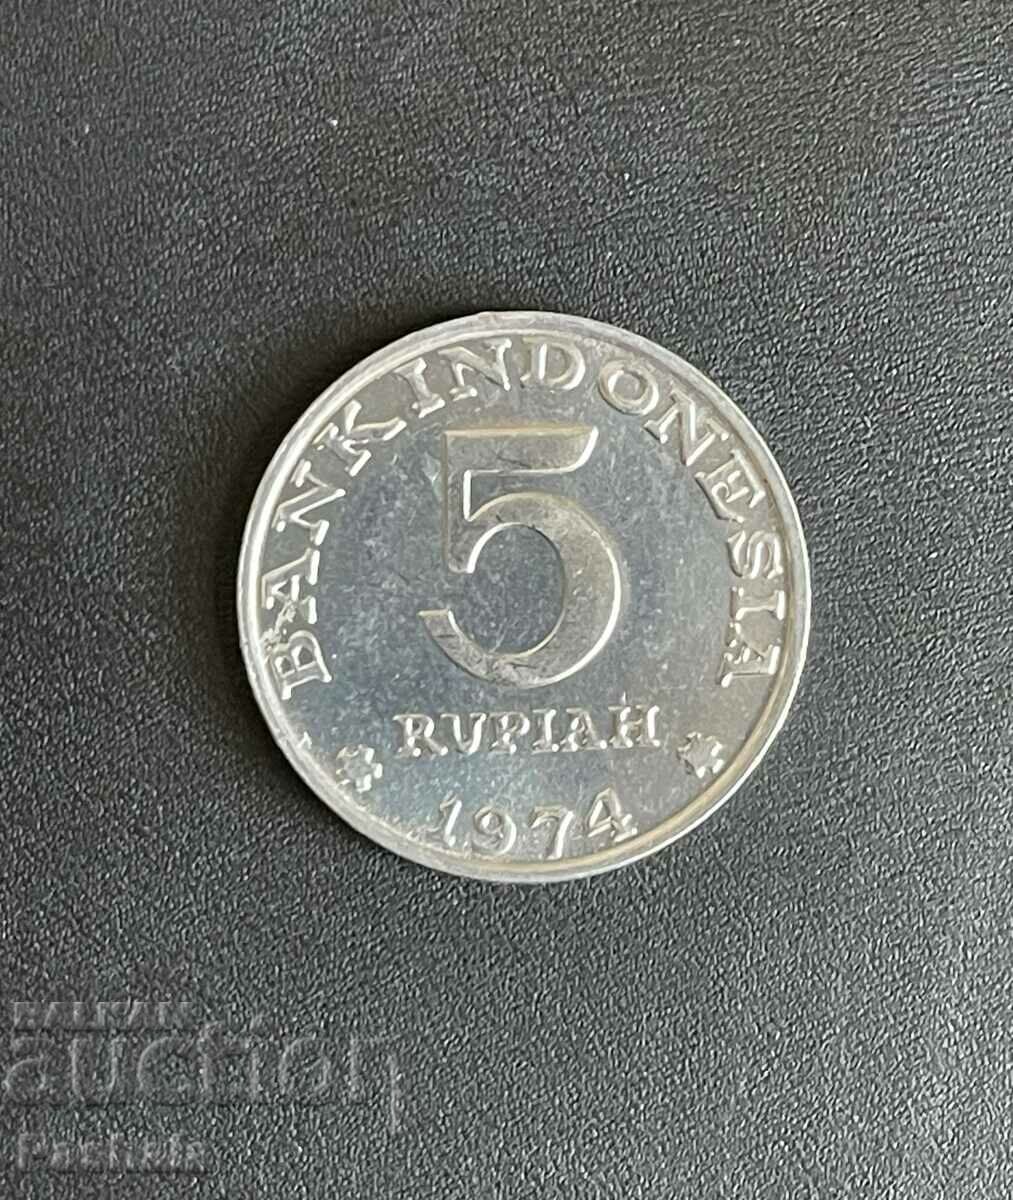 Ινδονησία 5 ρουπίες 1974